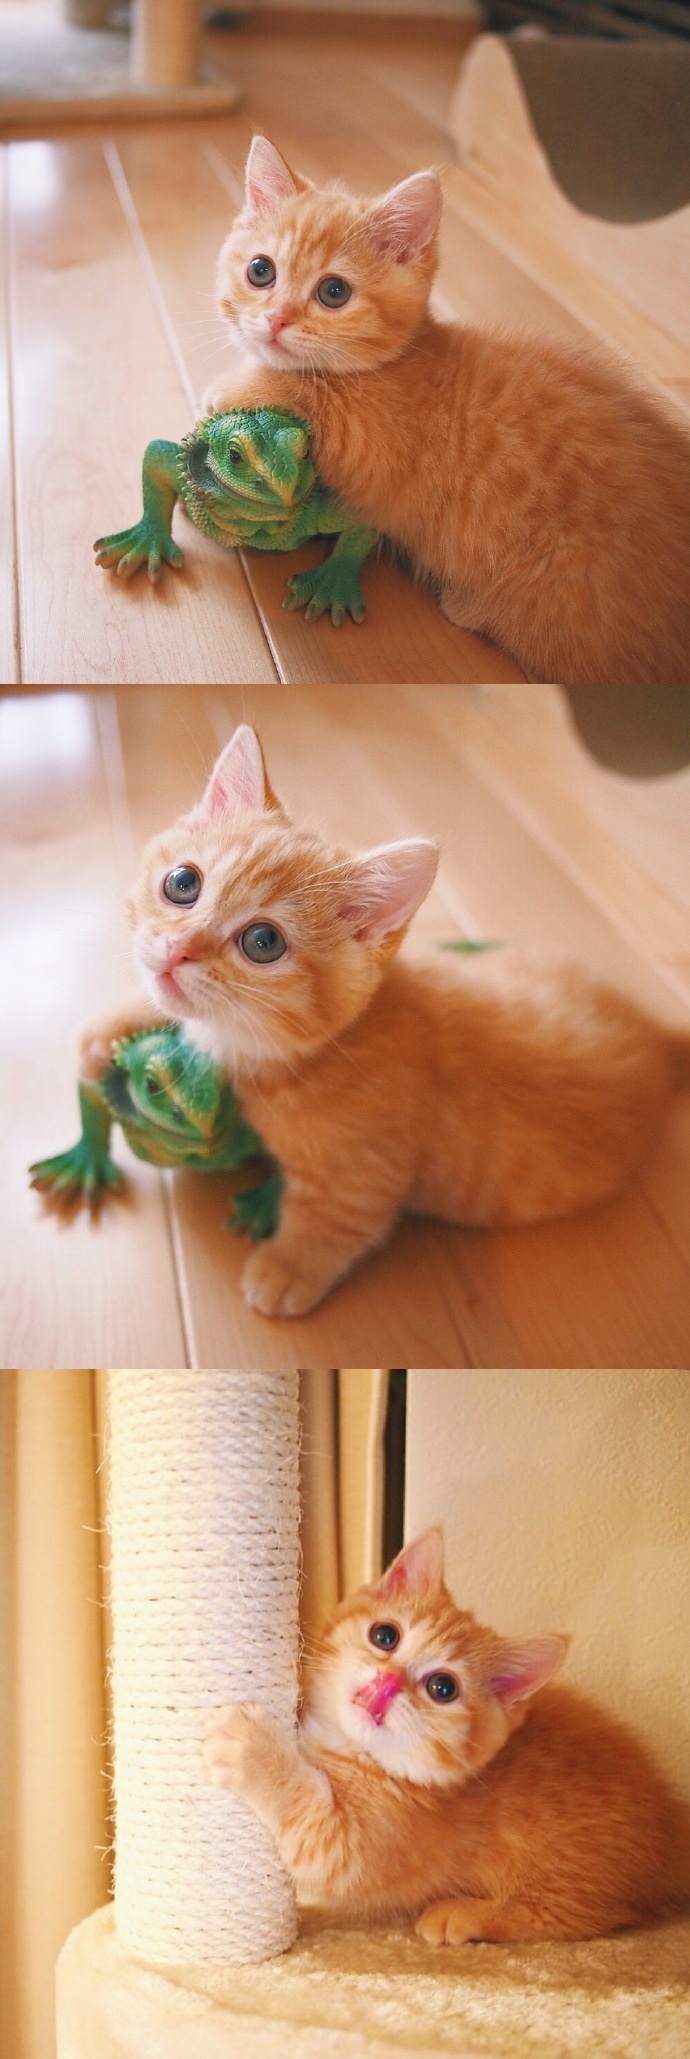 猫的图片可爱 很萌的橘猫图片(4)